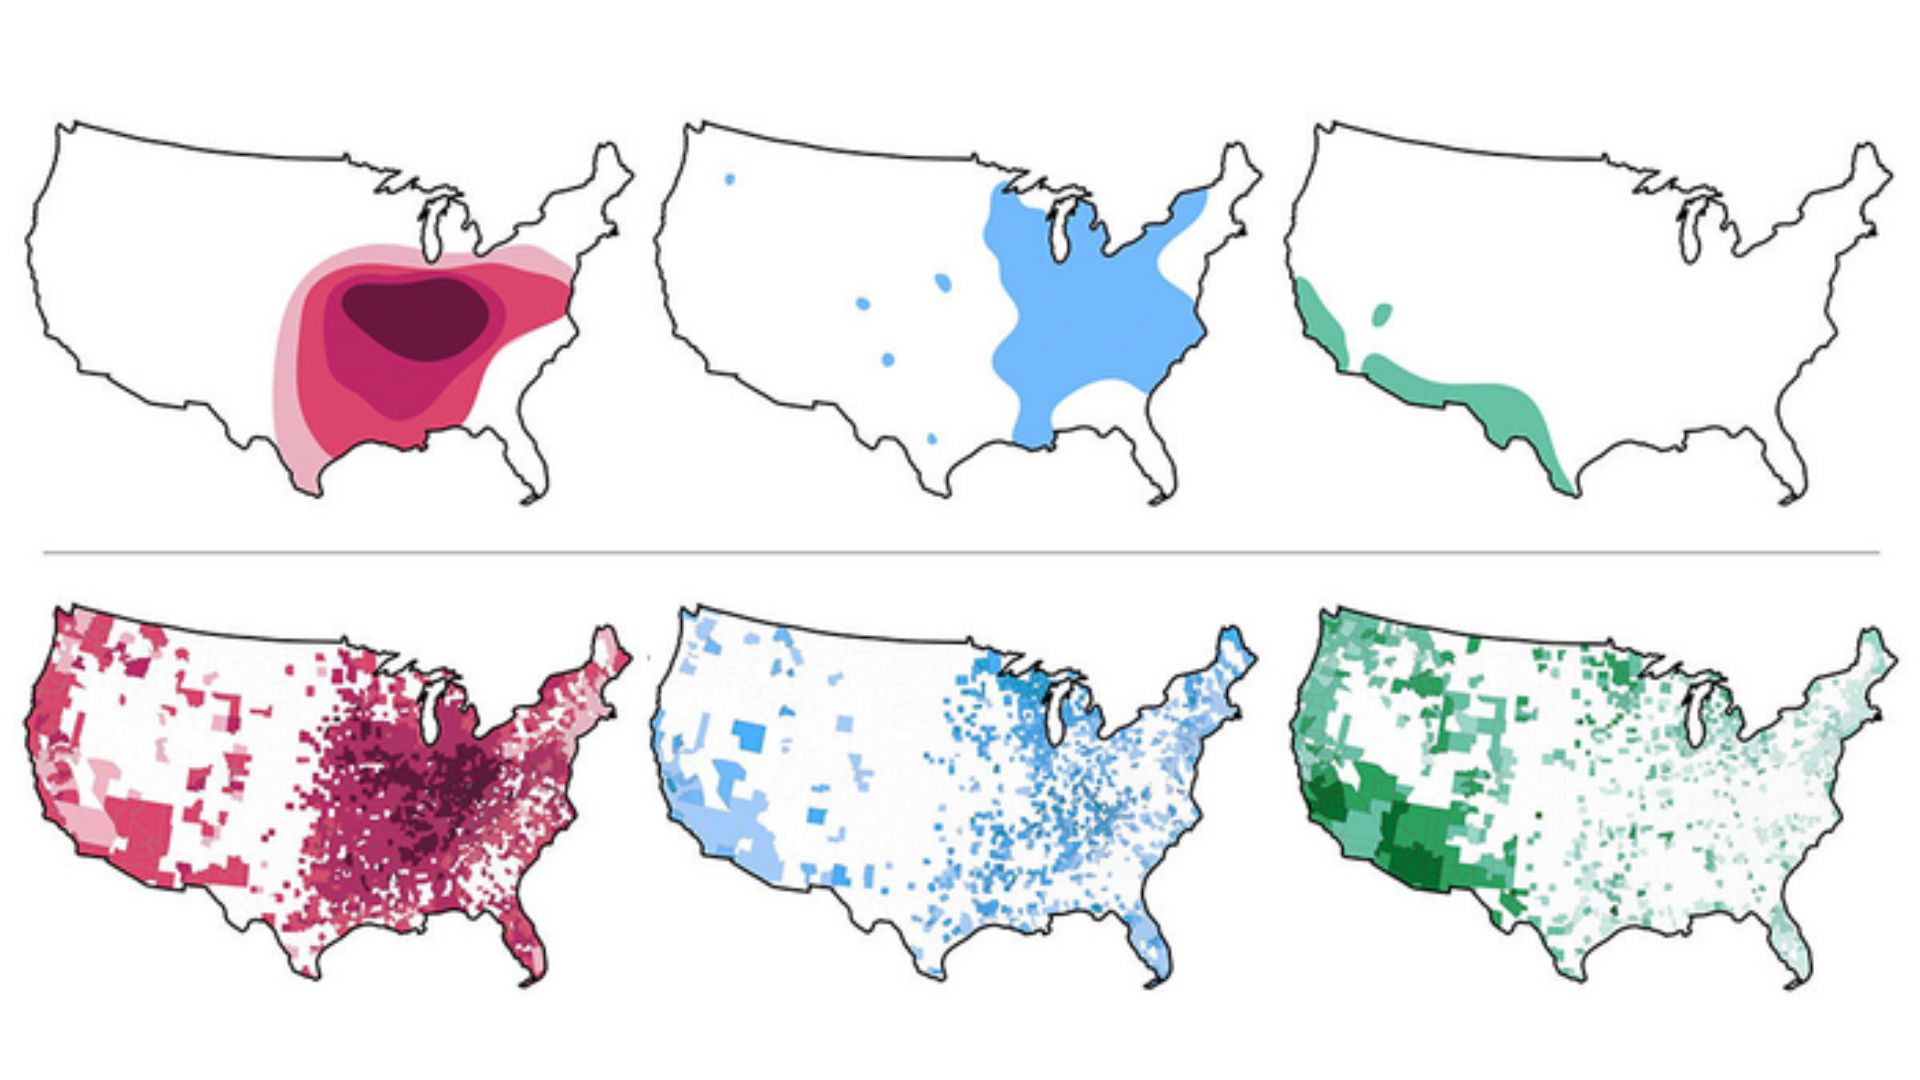 Drei US-Karten zeigen, wie sich die historische und aktuelle Verbreitung von drei bodenbürtigen Pilzen heute im Vergleich zu den 1950er Jahren unterscheidet.  Die Pilze sind rot, grün und blau farbkodiert und zeigen in den aktuellen Karten jeweils eine drastisch größere Abdeckung als früher